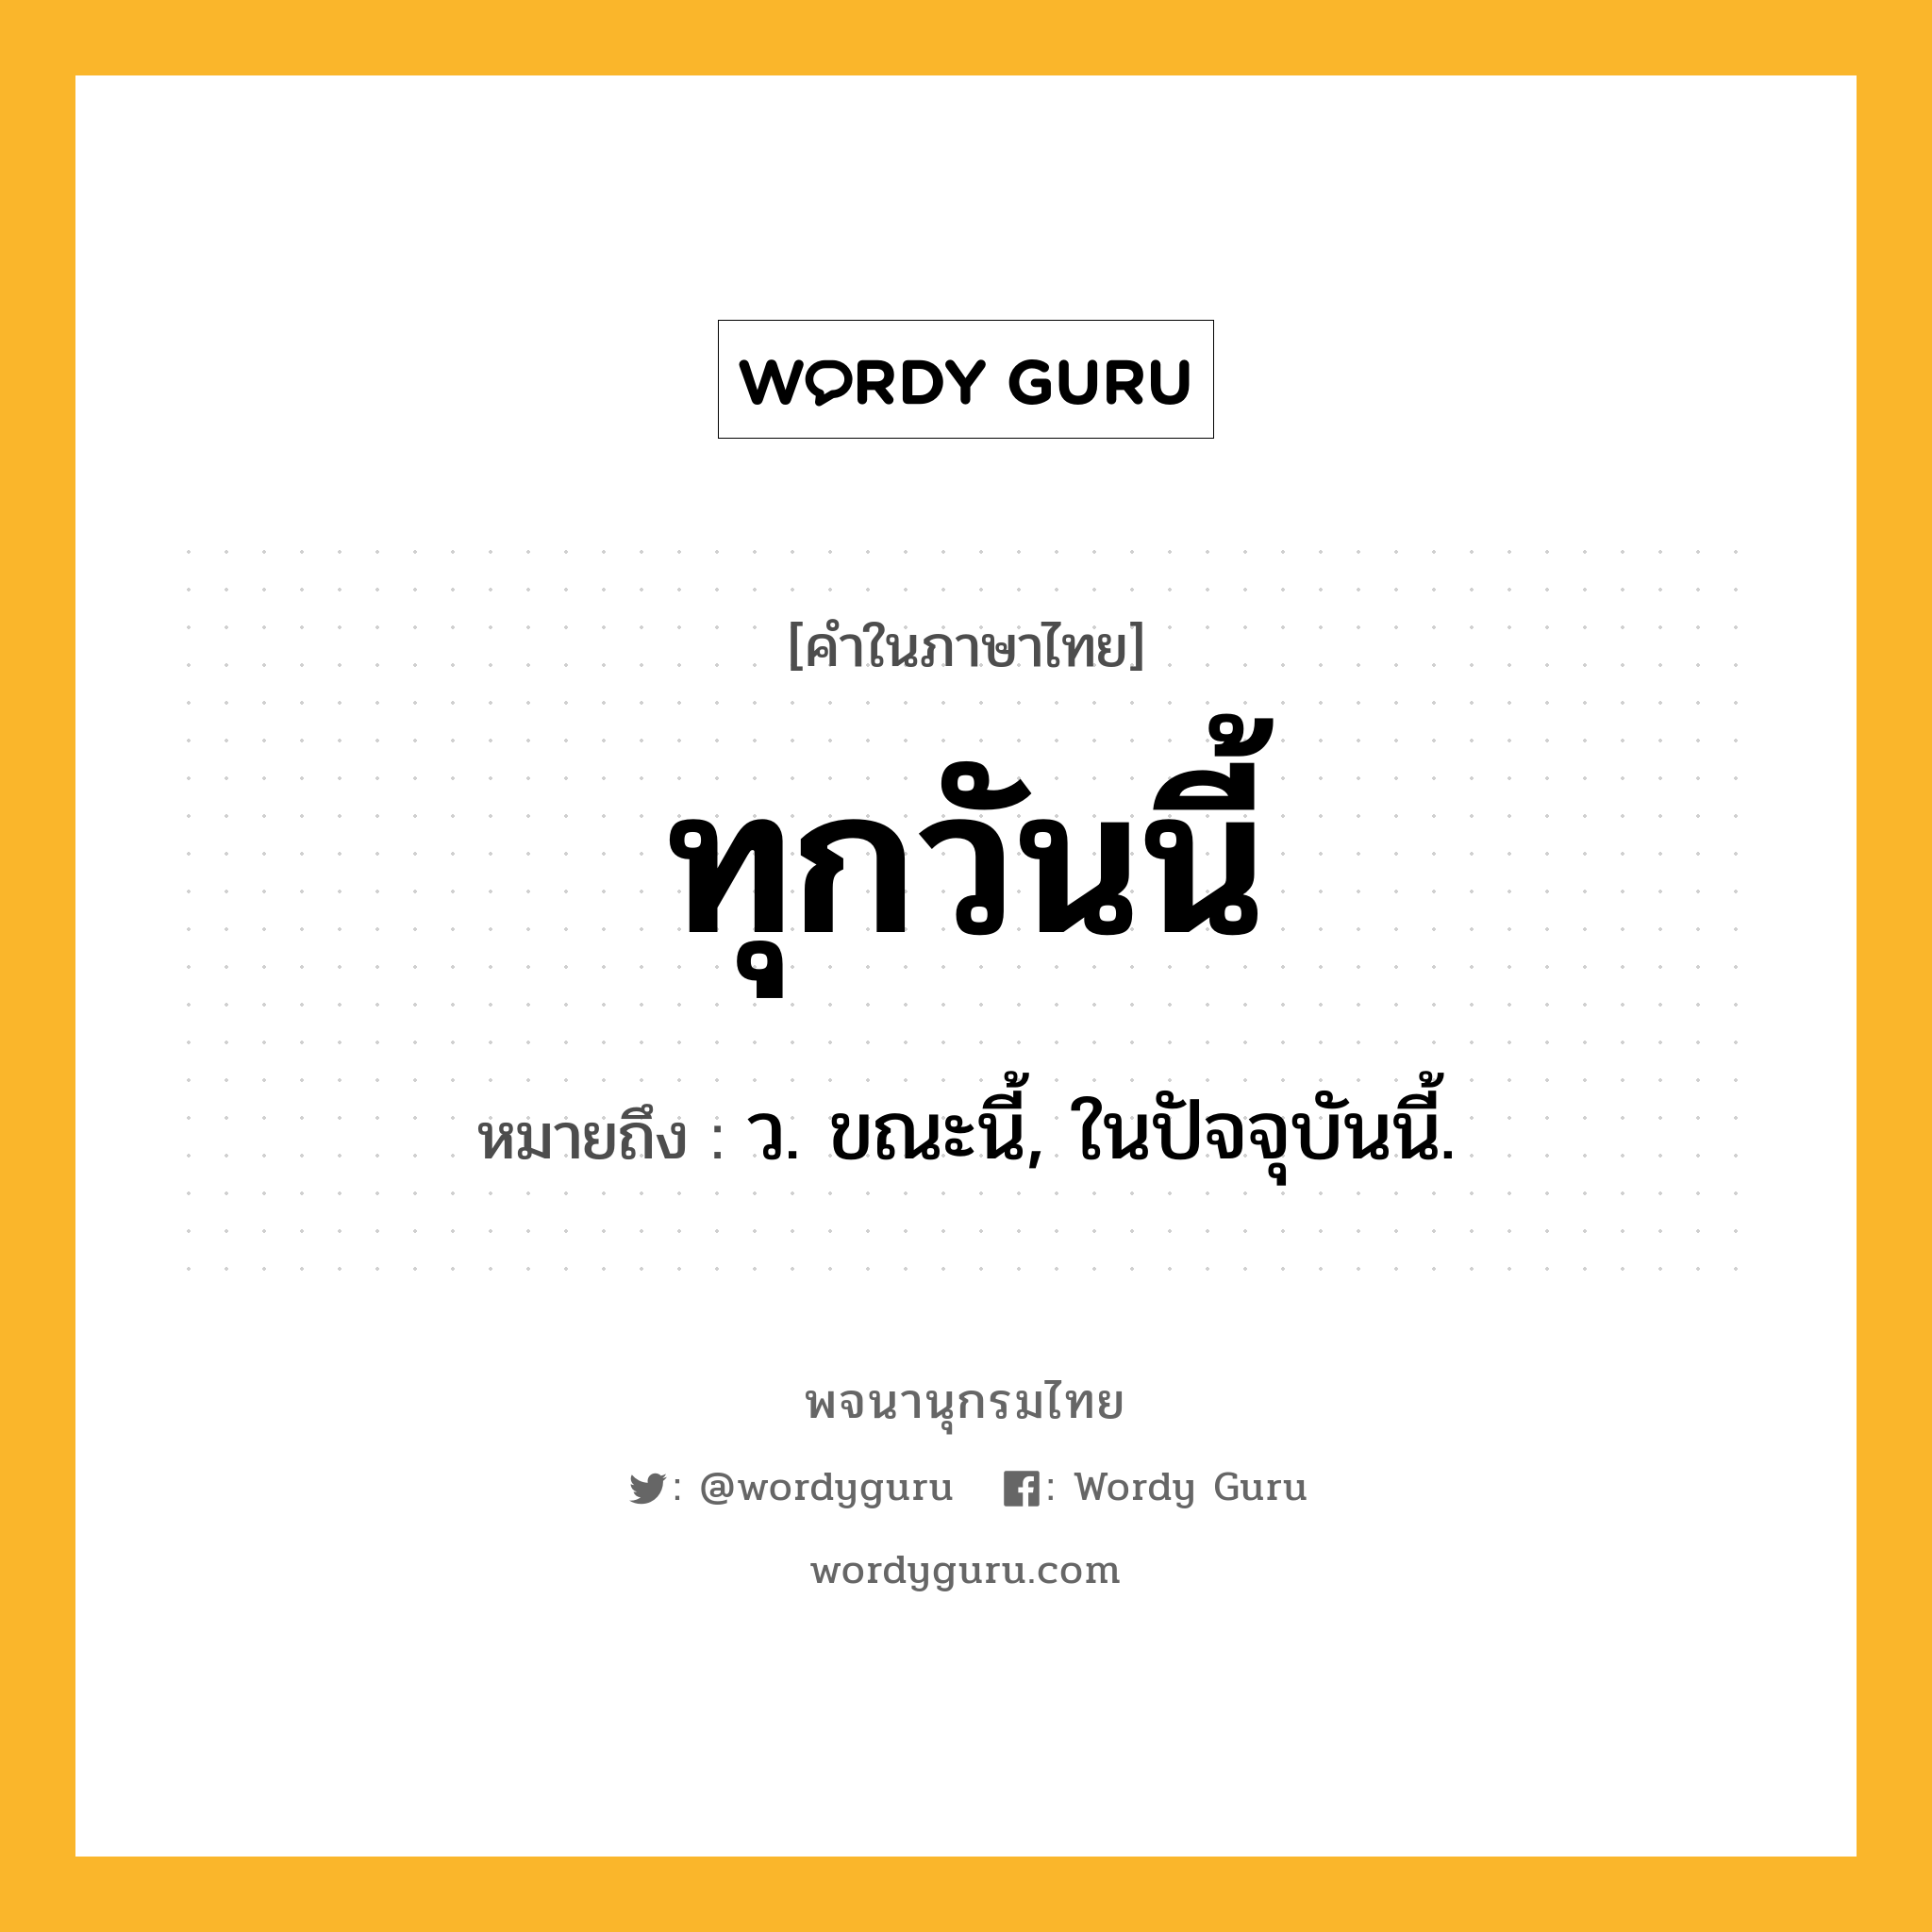 ทุกวันนี้ ความหมาย หมายถึงอะไร?, คำในภาษาไทย ทุกวันนี้ หมายถึง ว. ขณะนี้, ในปัจจุบันนี้.